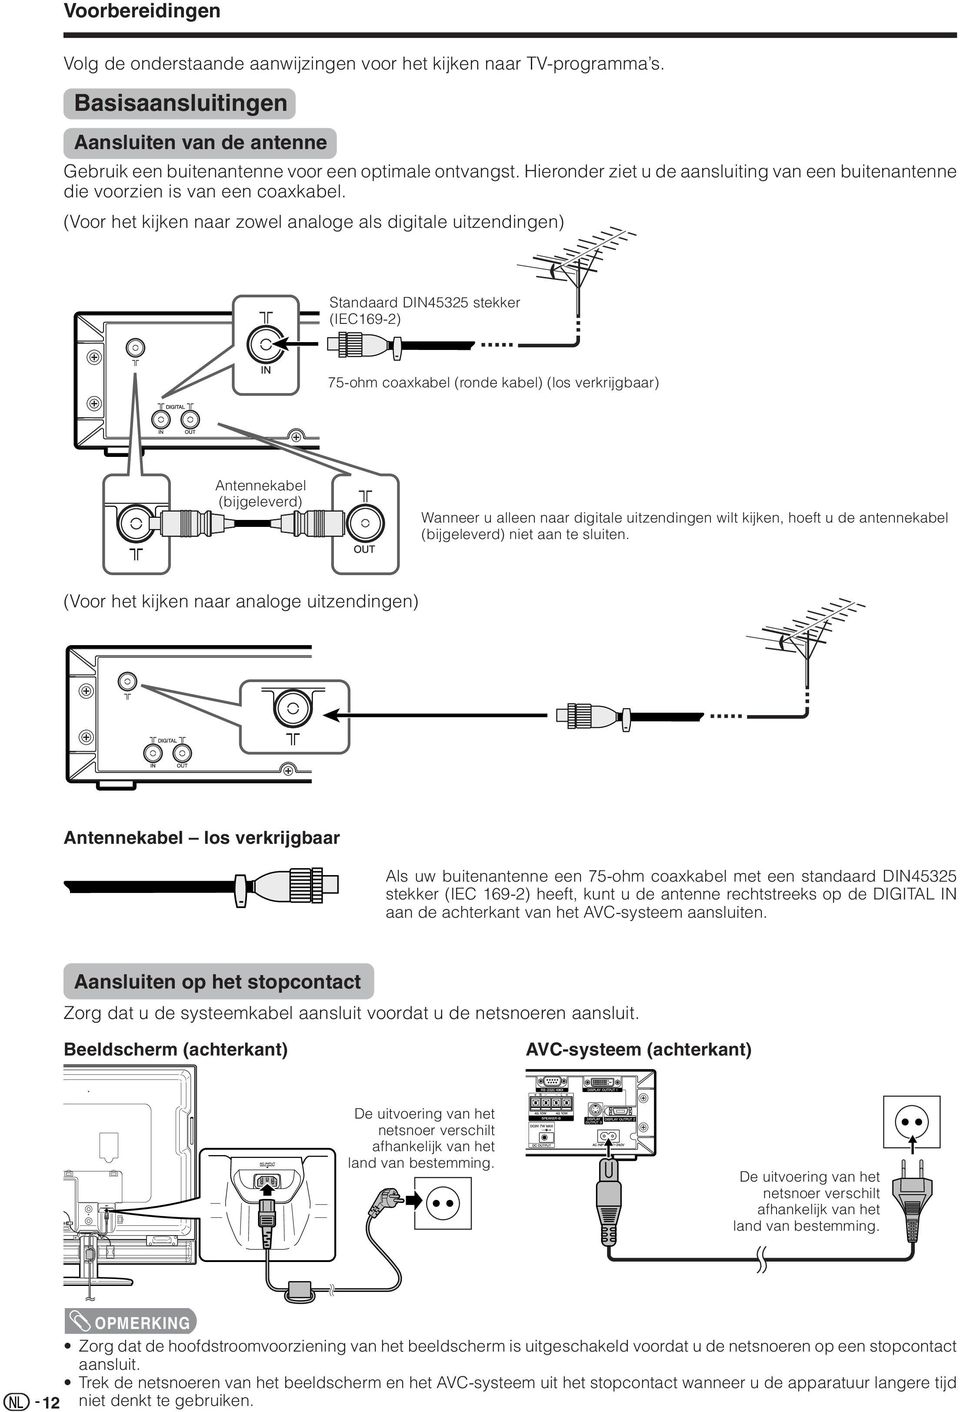 (Voor het kijken naar zowel analoge als digitale uitzendingen) Standaard DIN55 stekker (IEC69-) 75-ohm coaxkabel (ronde kabel) (los verkrijgbaar) Antennekabel (bijgeleverd) Wanneer u alleen naar